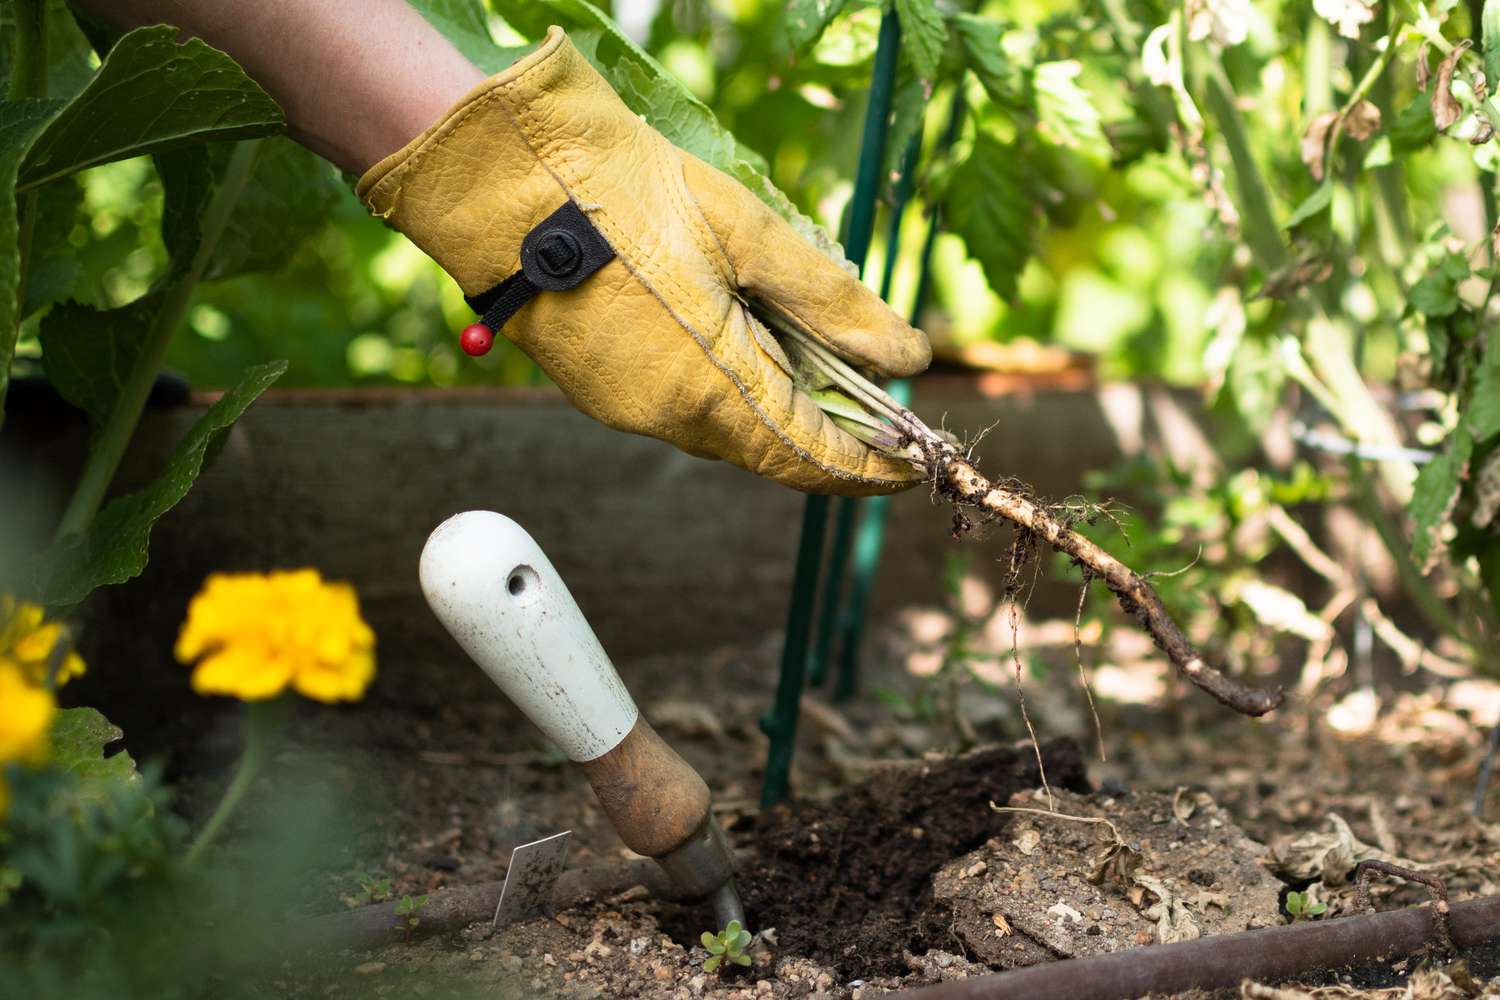 Plante de raifort arrachée du jardin avec des gants et une pelle avec les racines exposées